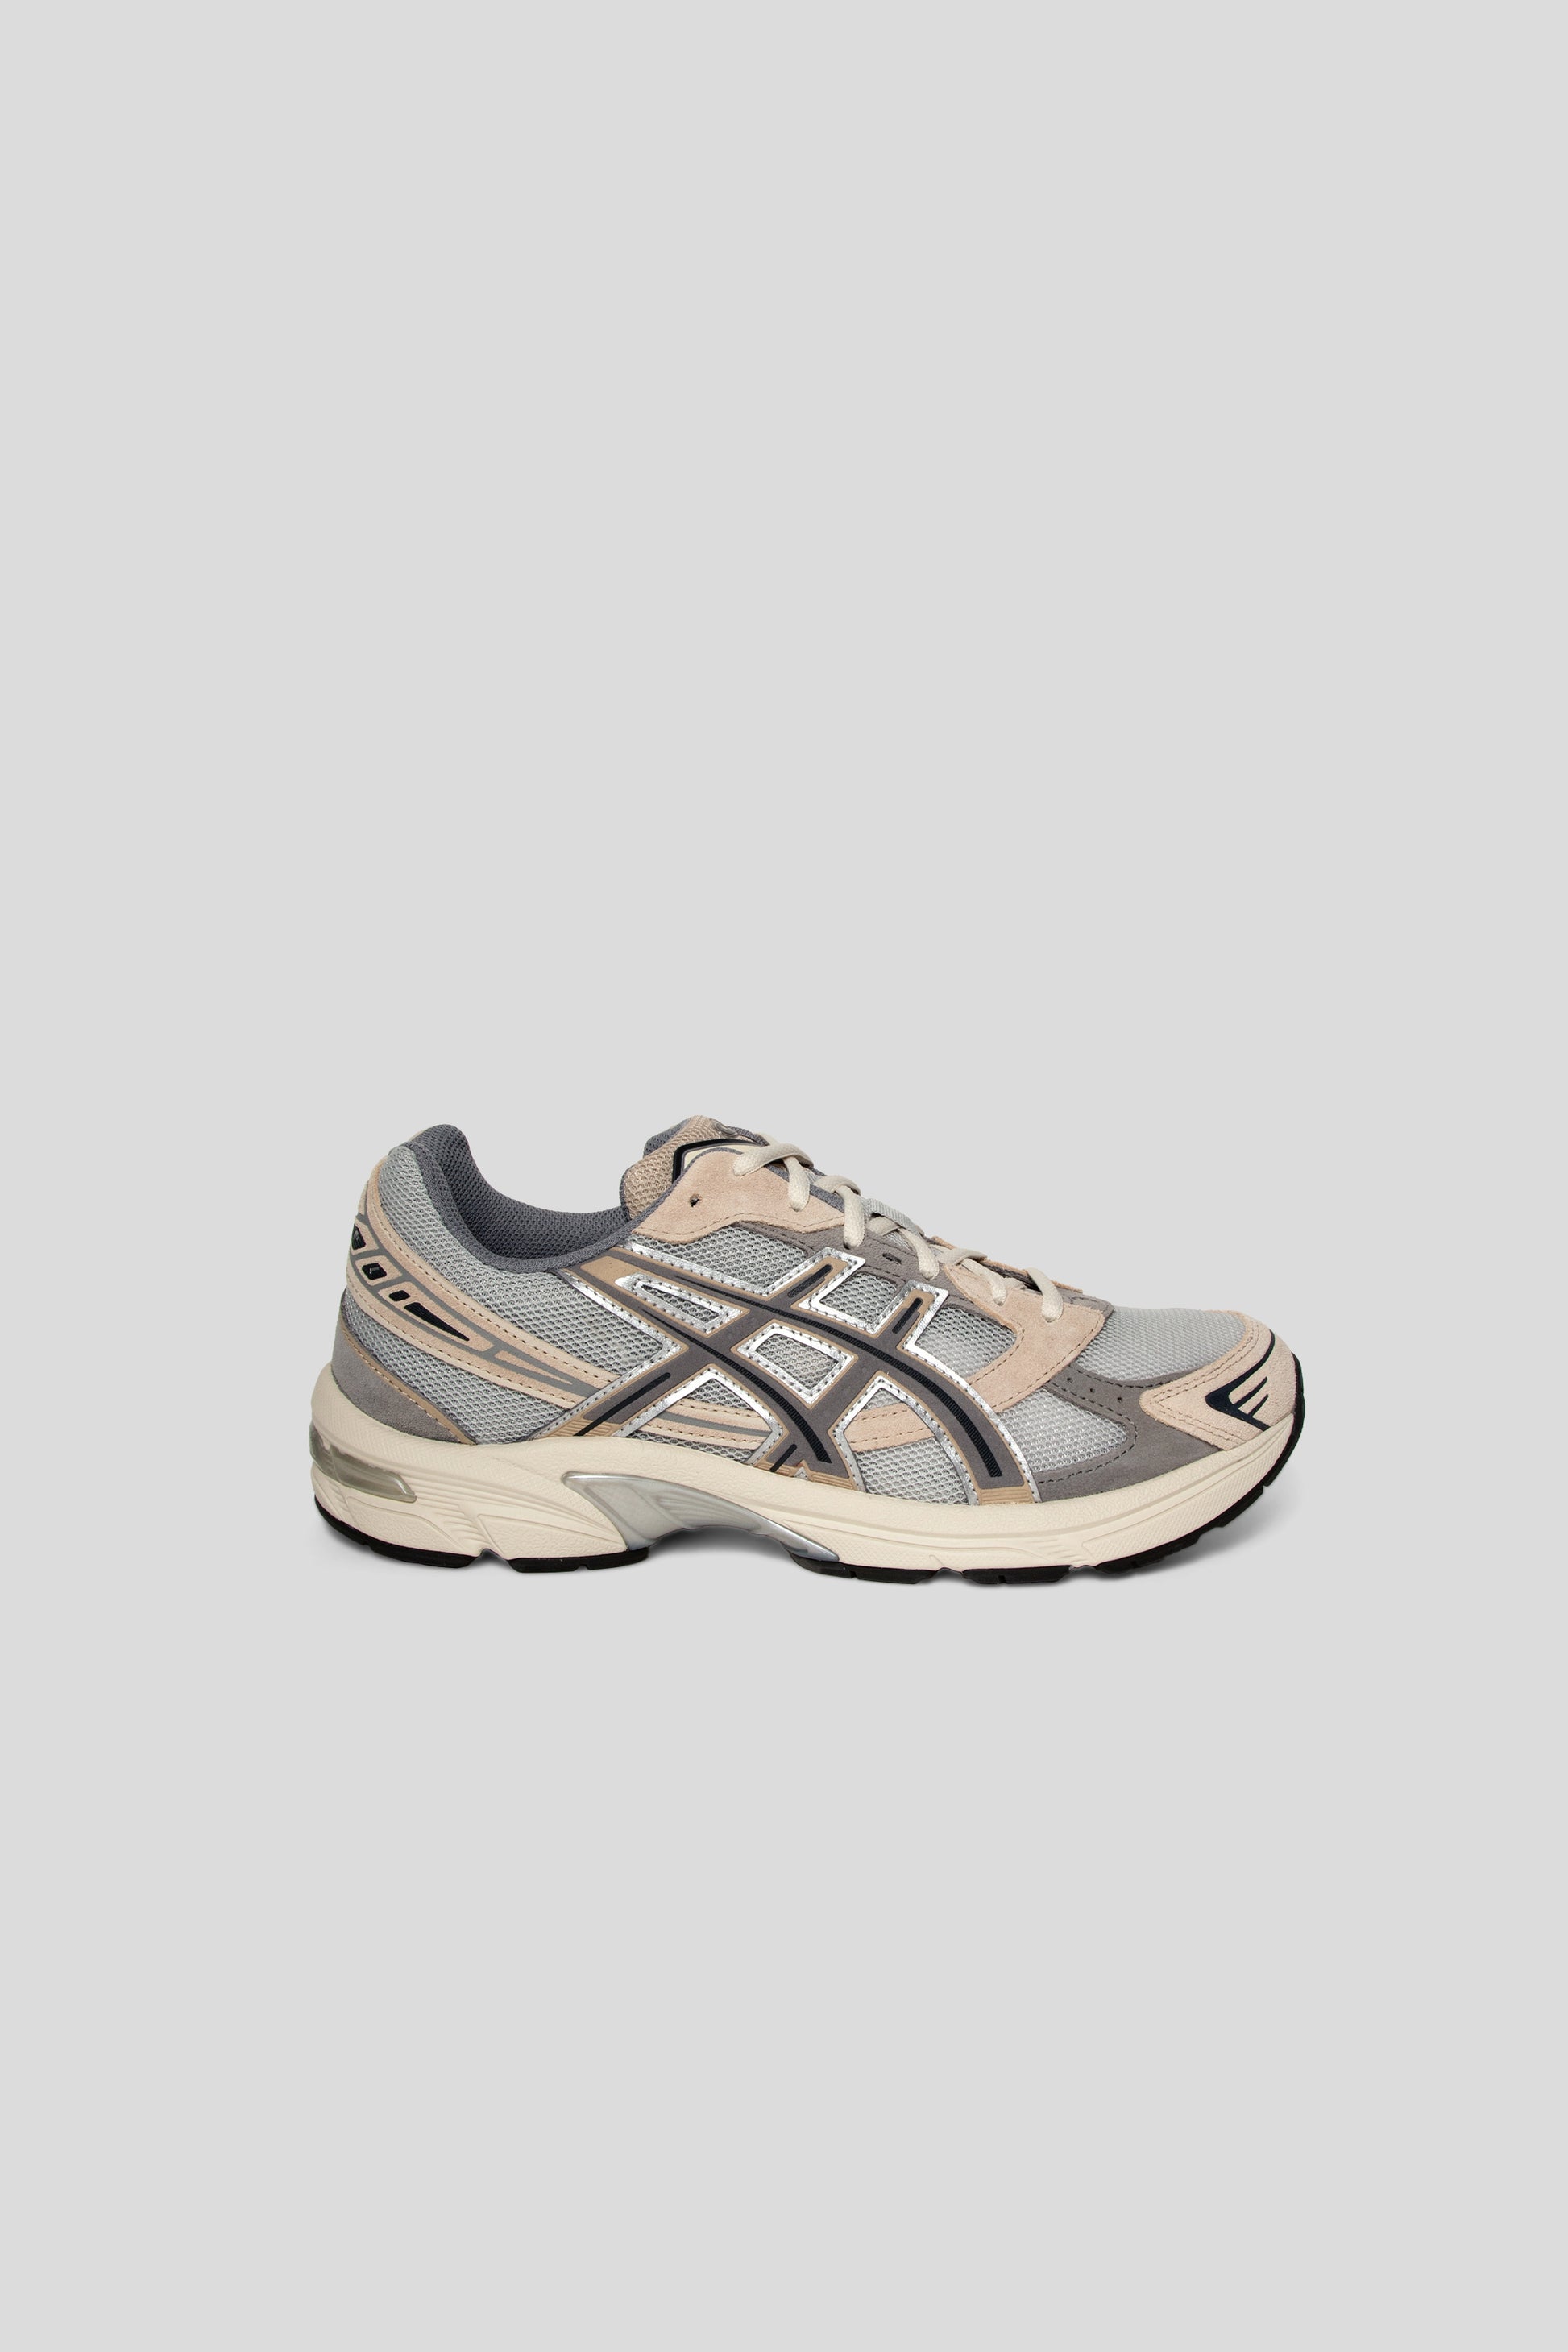 Asics Gel-1130 Shoe in Oyster Grey / Clay Grey